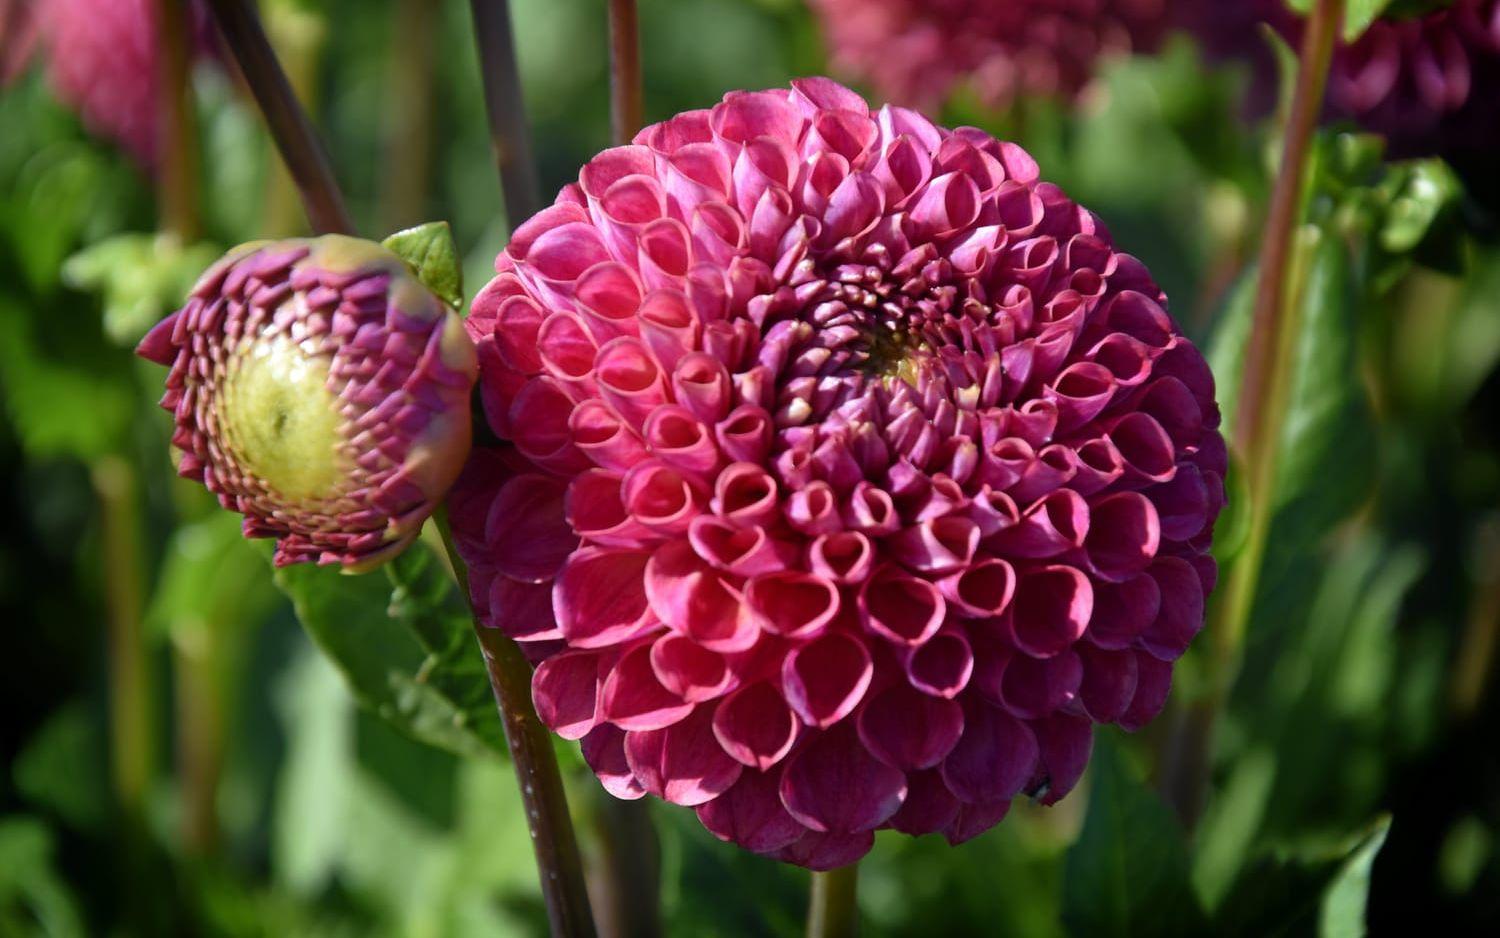 Dahlior finns i många färger och varianter. Här en bulligt rosa blomma.